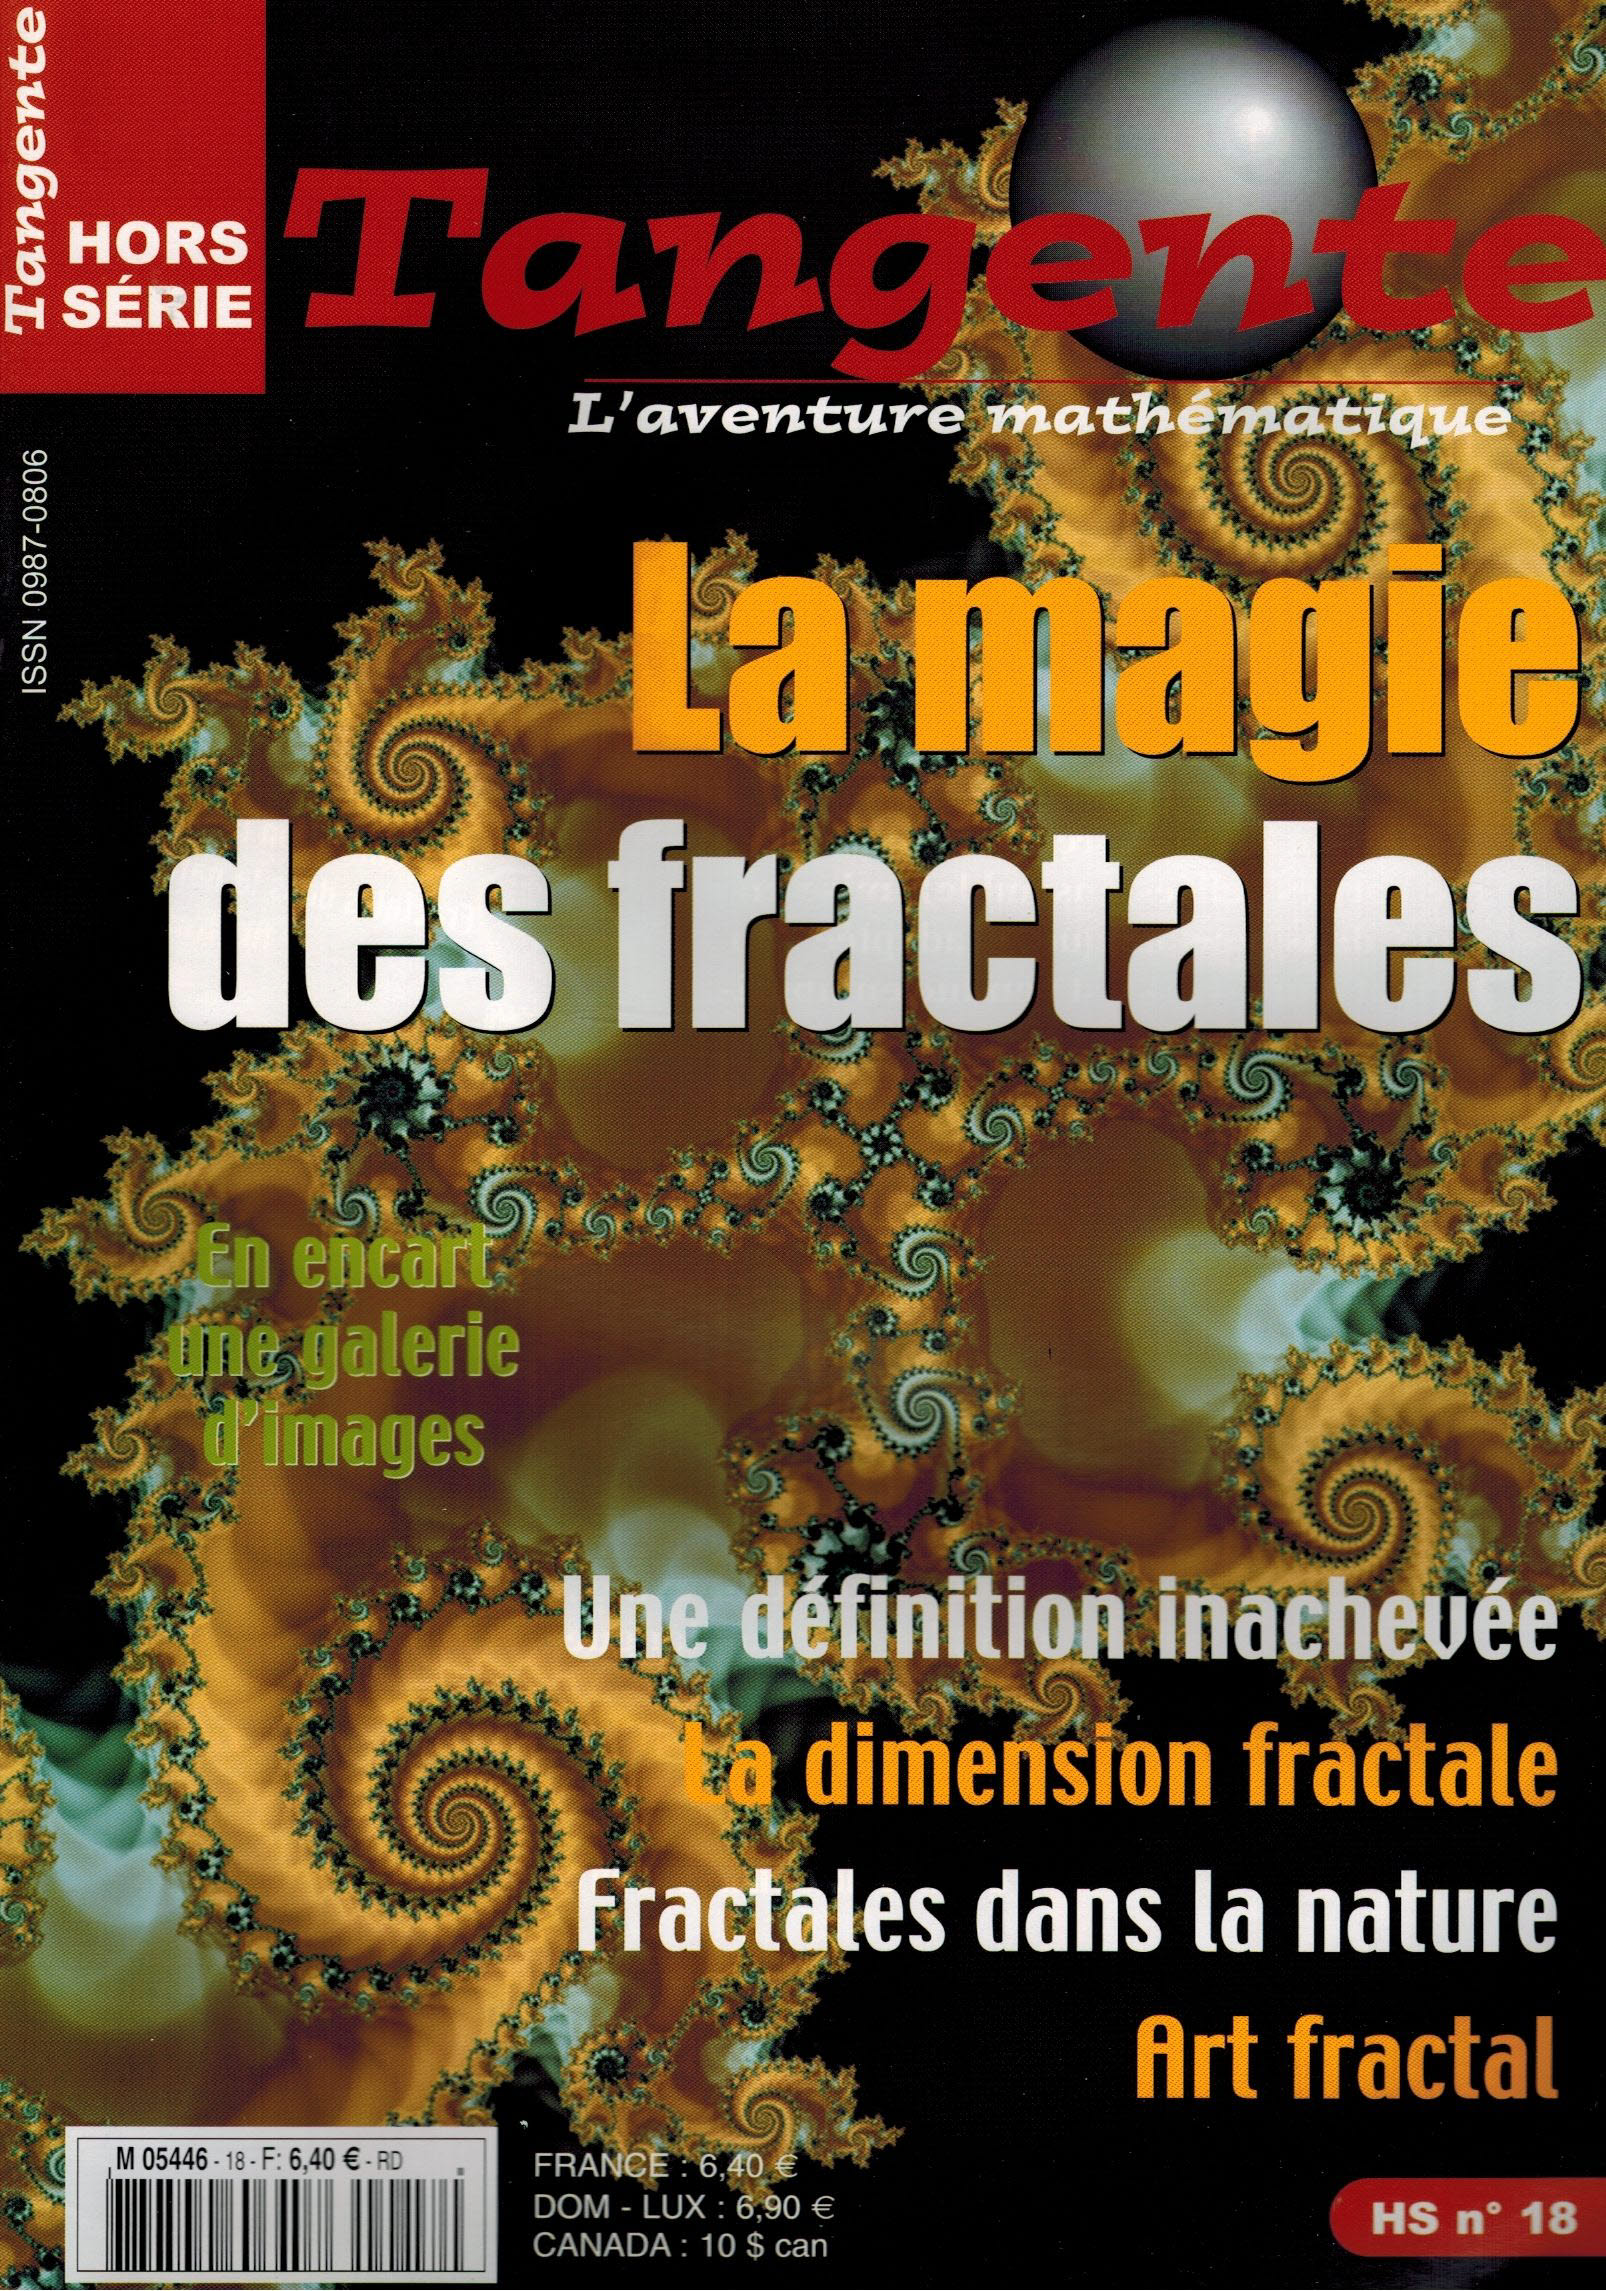 image Hs K 18 - Les fractales